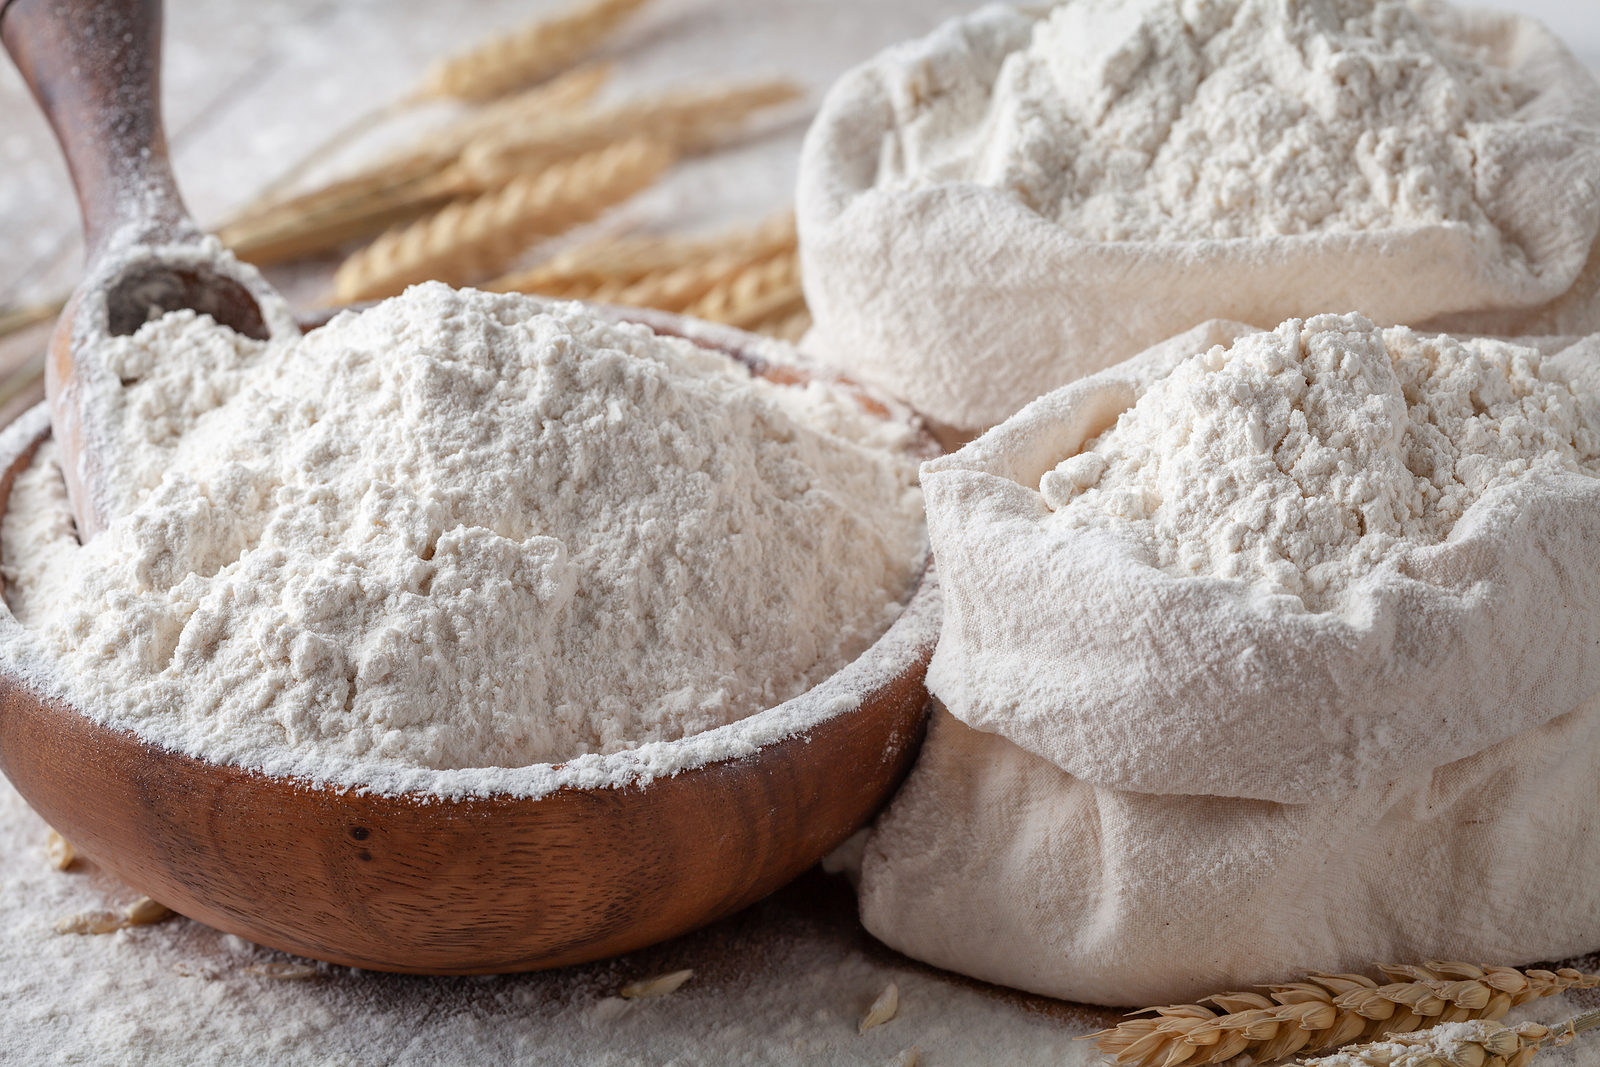 Sprzedaż mąki i dodatków do ciast w sklepach małoformatowych do 300 mkw.